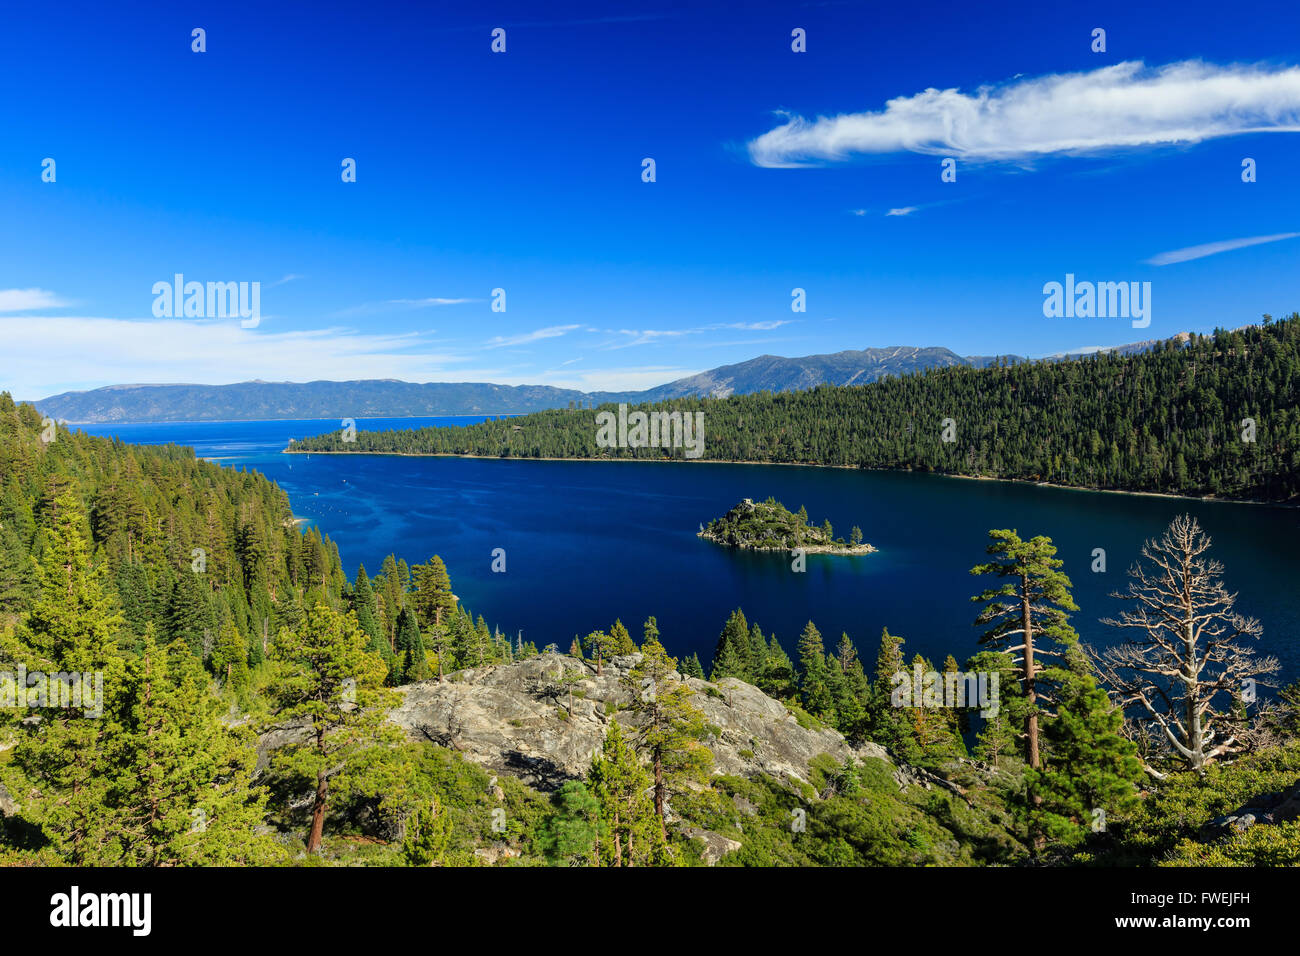 Fannette island, Photos Taken in Lake Tahoe Area Stock Photo